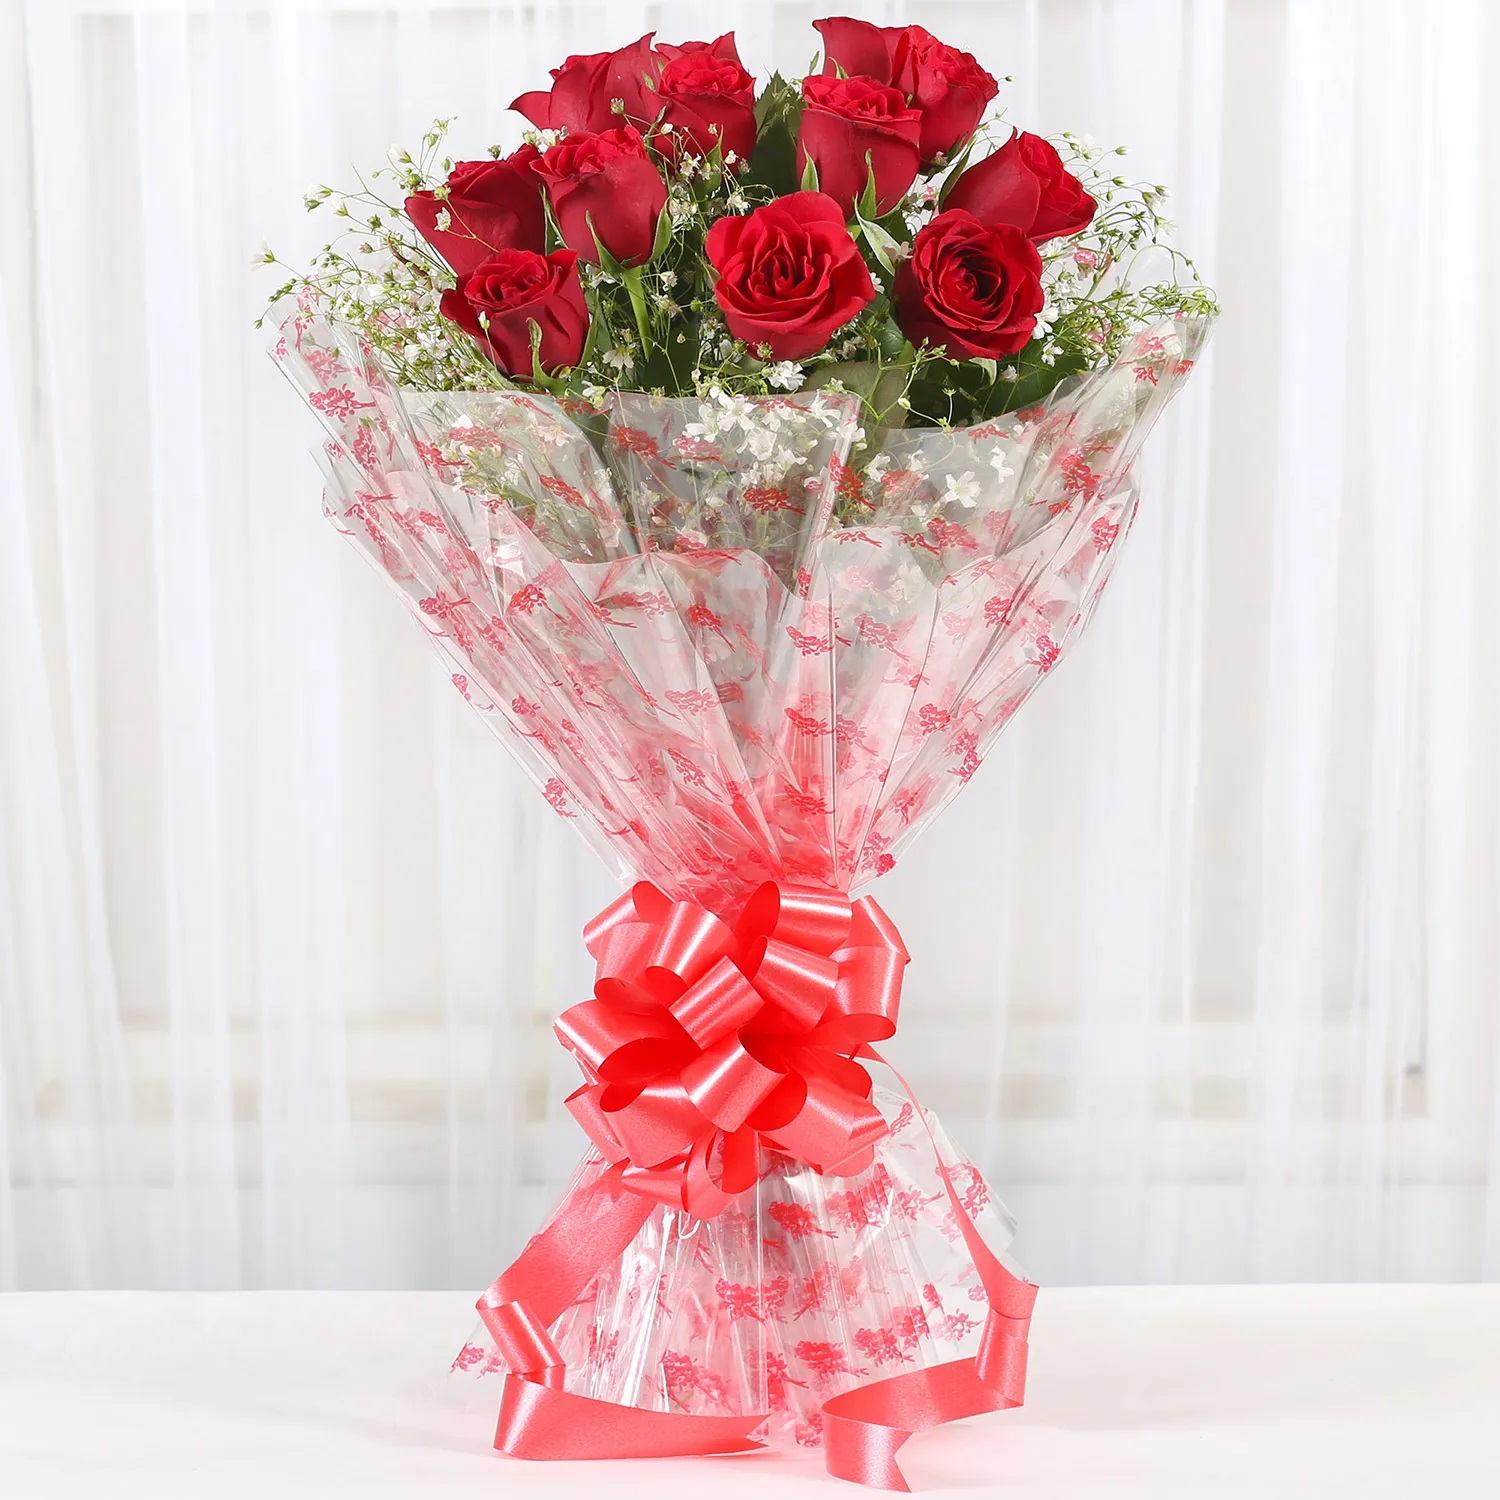  Velvety Red Roses Bouquet